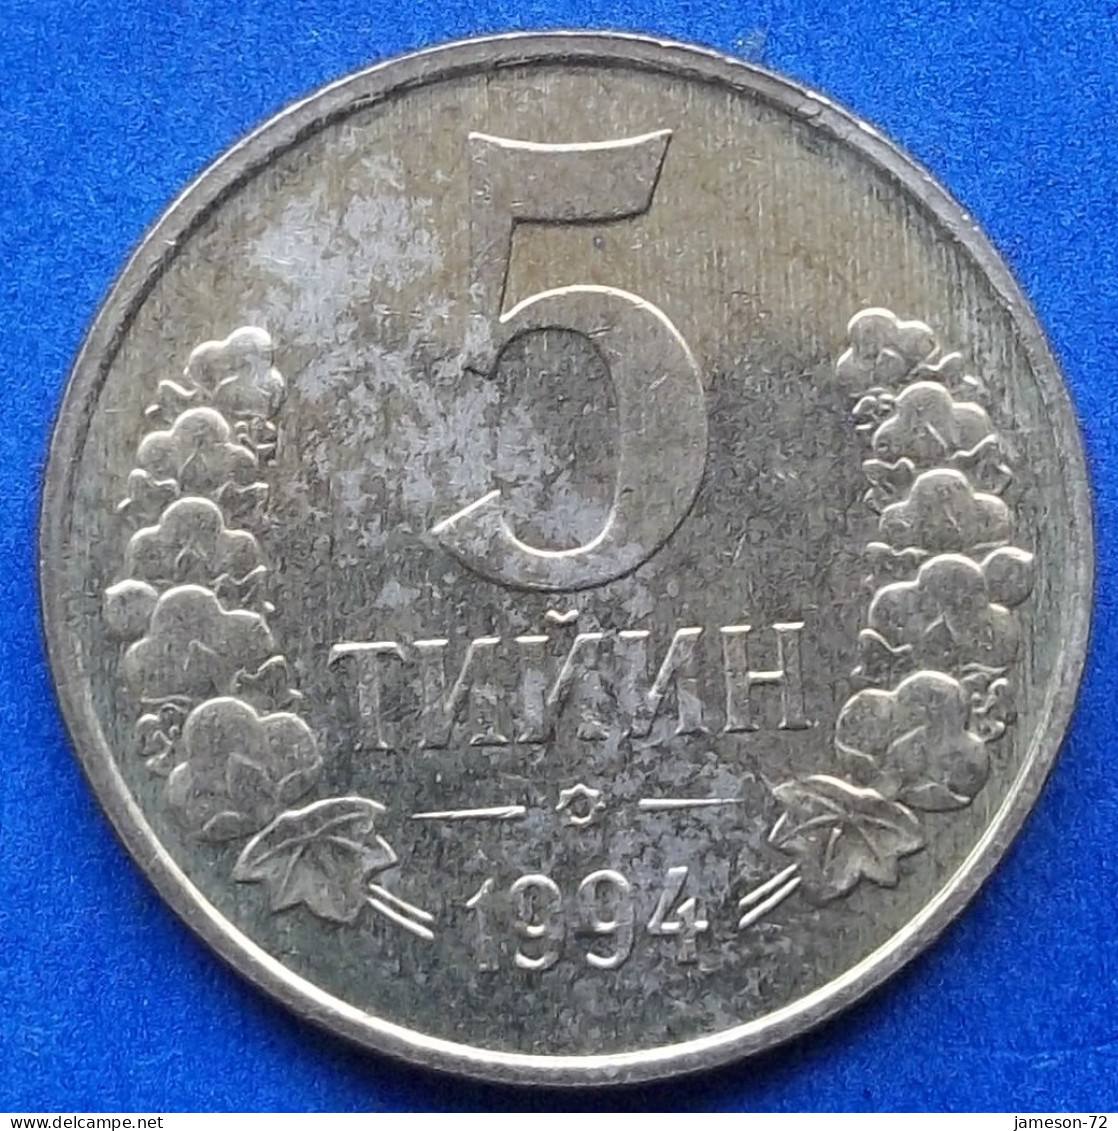 UZBEKISTAN - 5 Tiyin 1994 KM# 3 Independent Republic (1991) - Edelweiss Coins - Uzbekistan